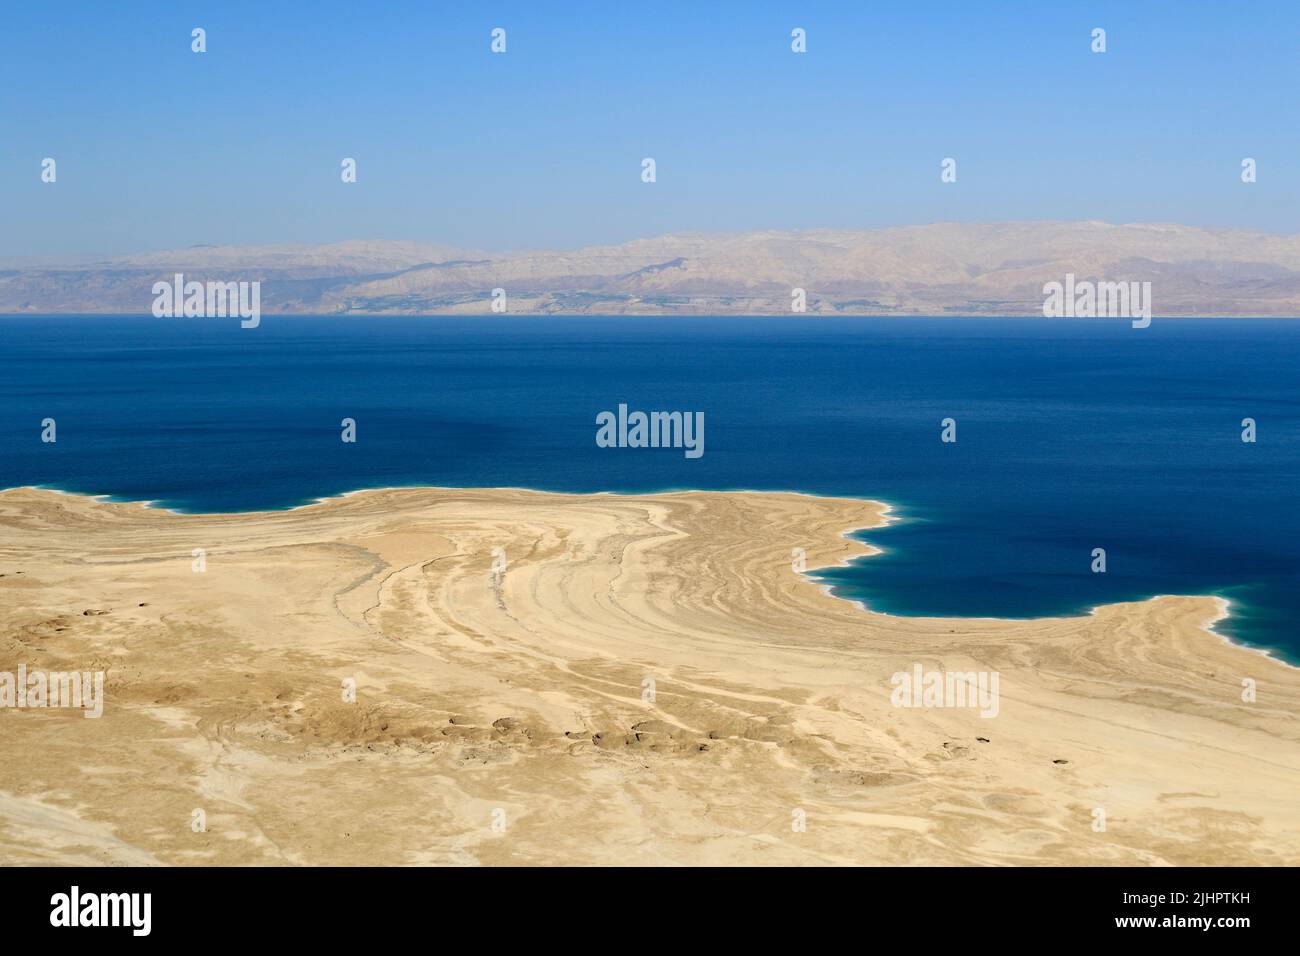 Dead sea in Israel Stock Photo